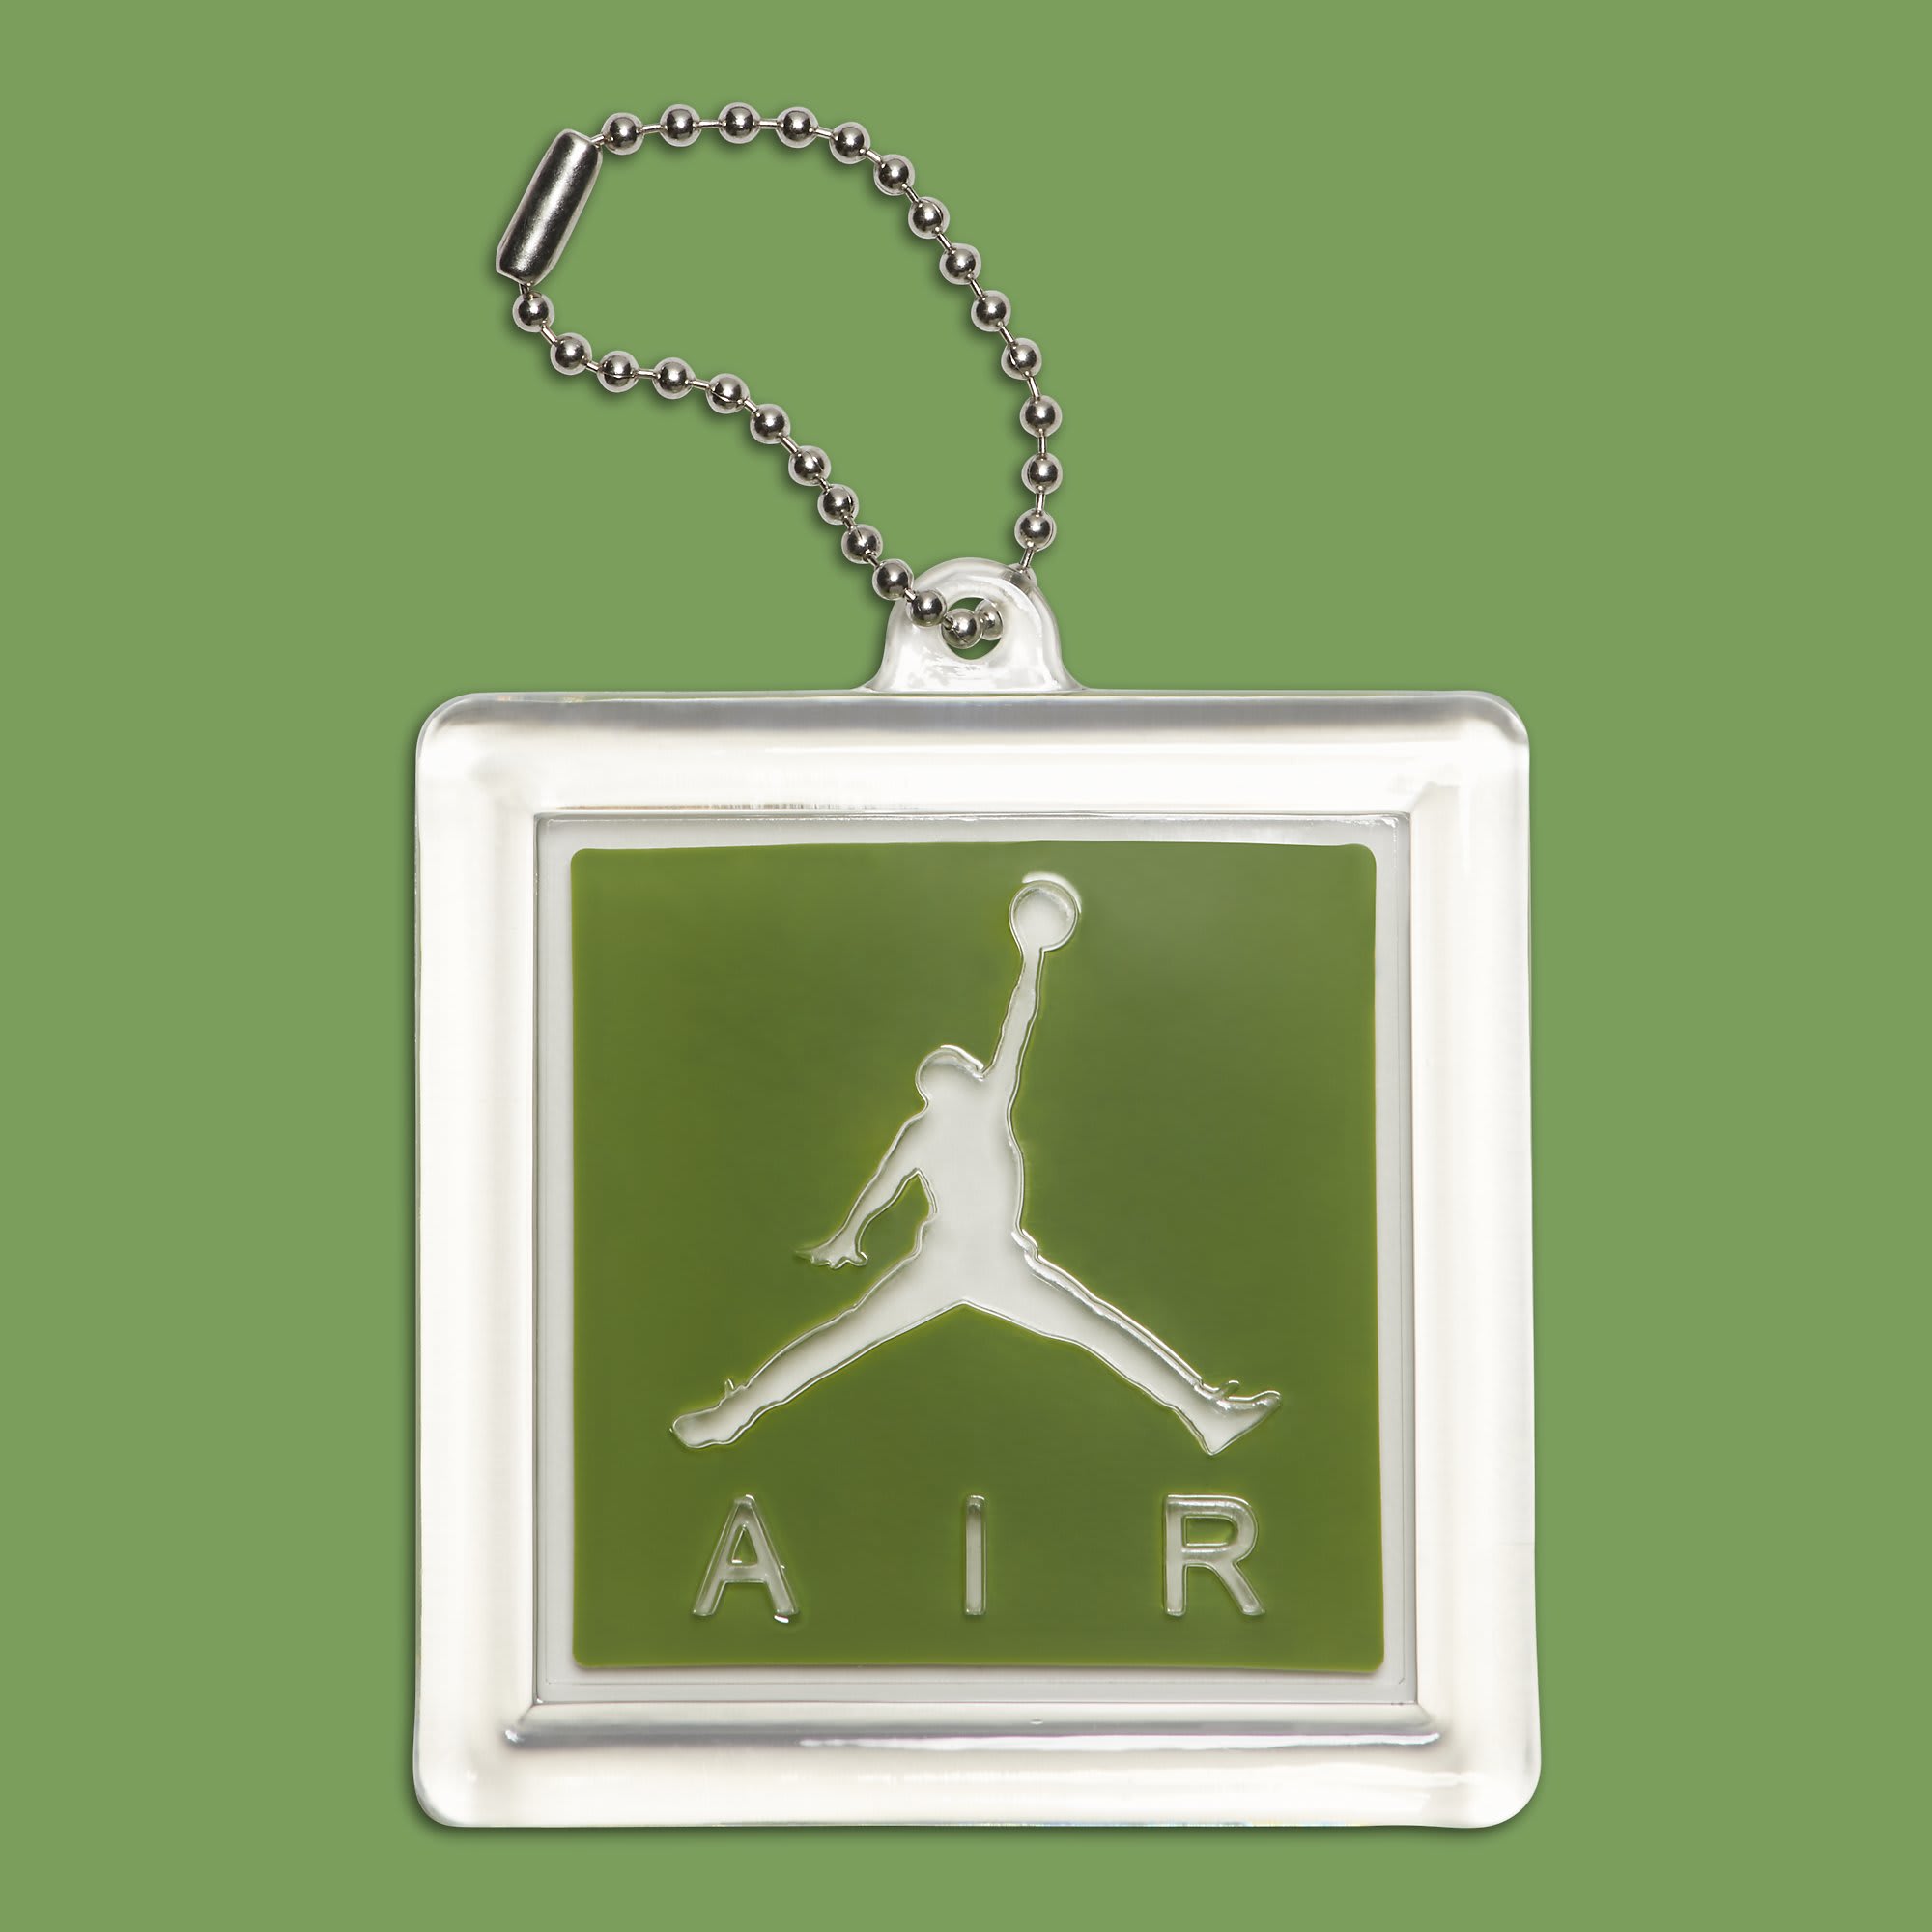 Air Jordan 3 III Chlorophyll Tinker Release Date 136064-006 Hang Tag